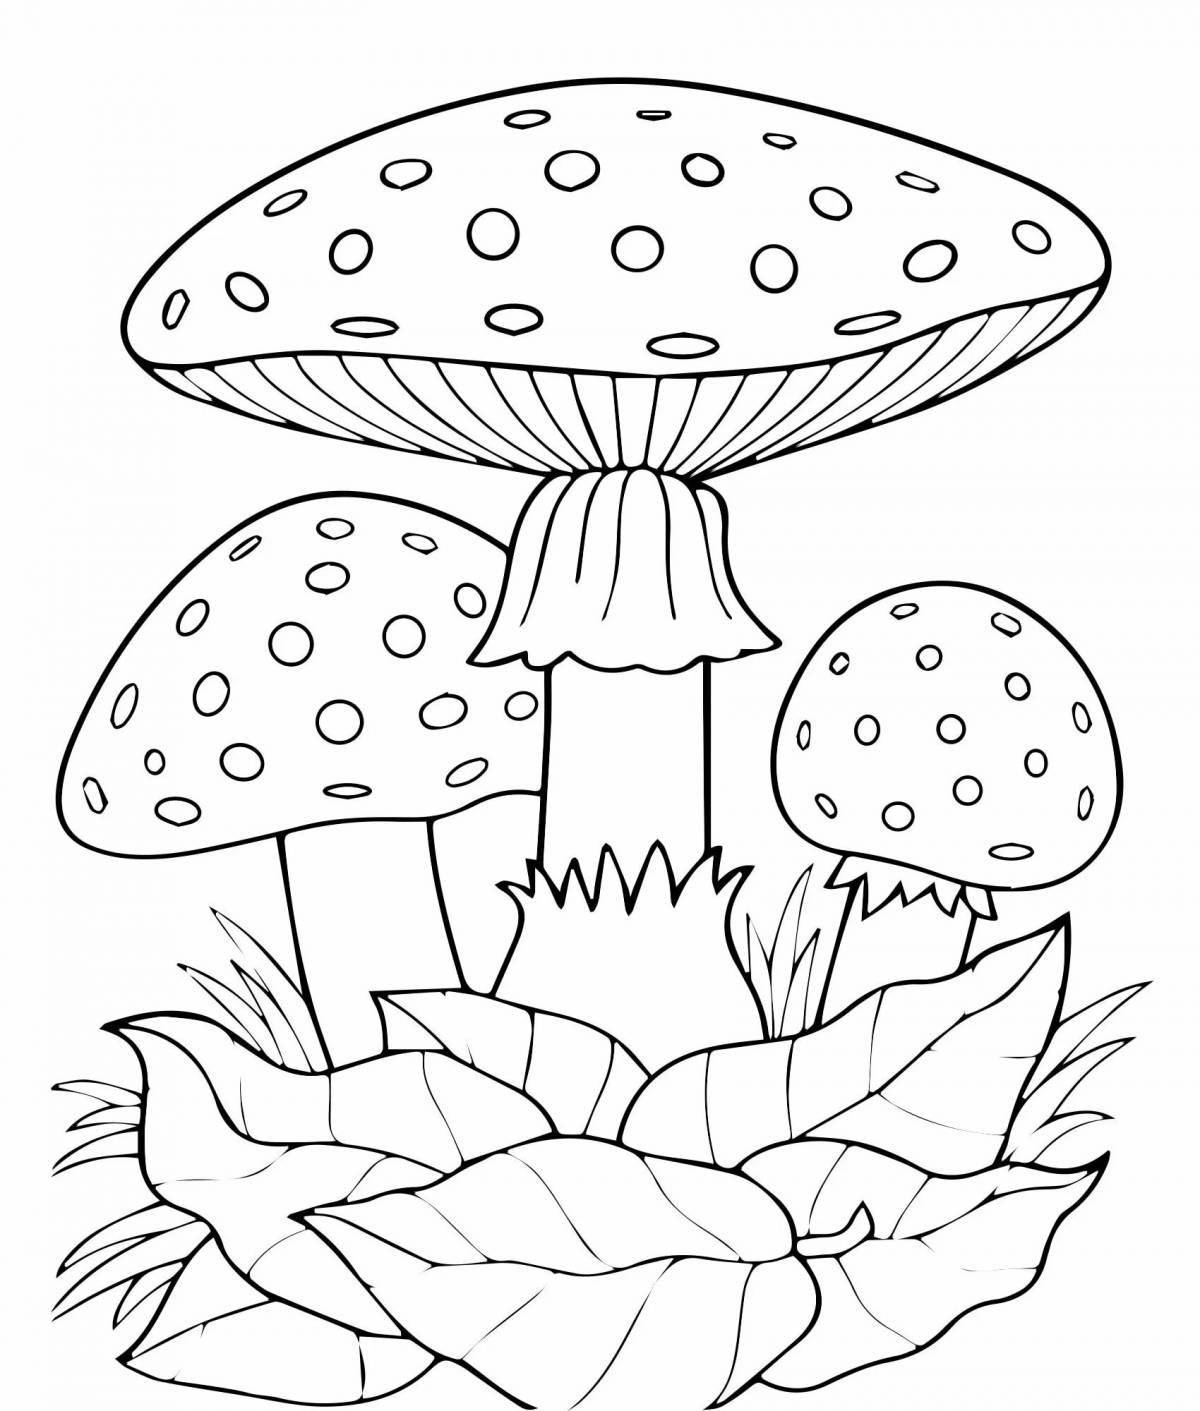 Magic toadstool mushrooms